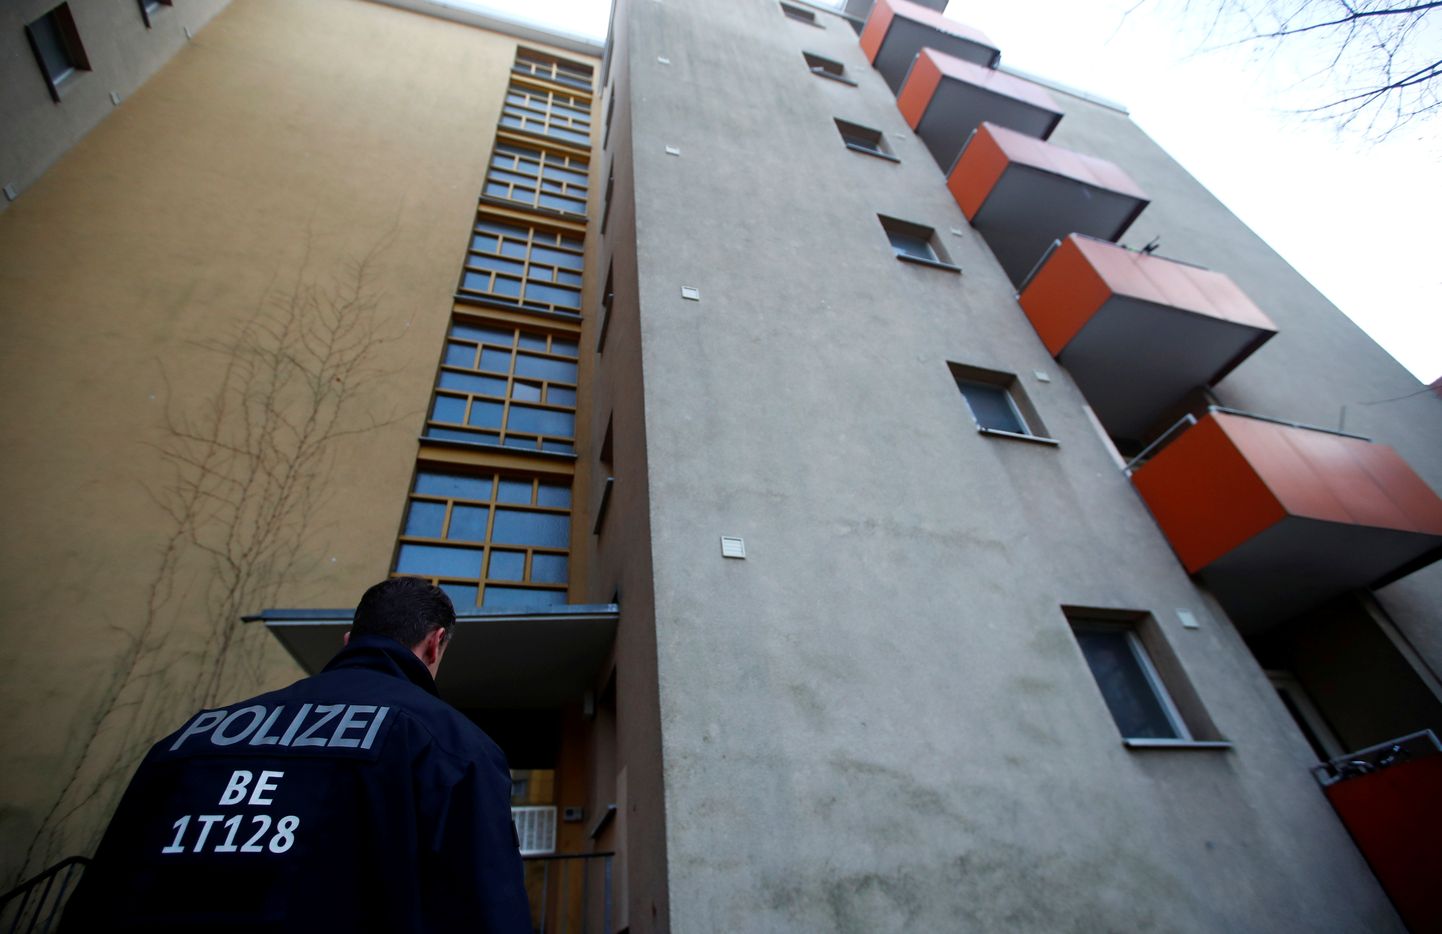 Politsei Berliini kortermaja ees, kus islamistliku rünnaku kavandamises kahtlustatav süürlane elas.